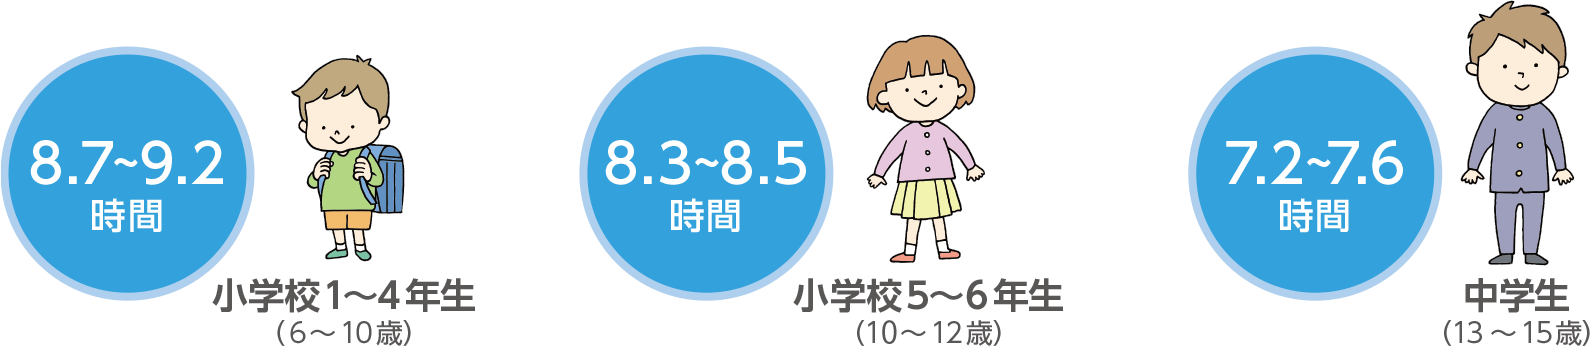 日本の子どもの平均睡眠時間